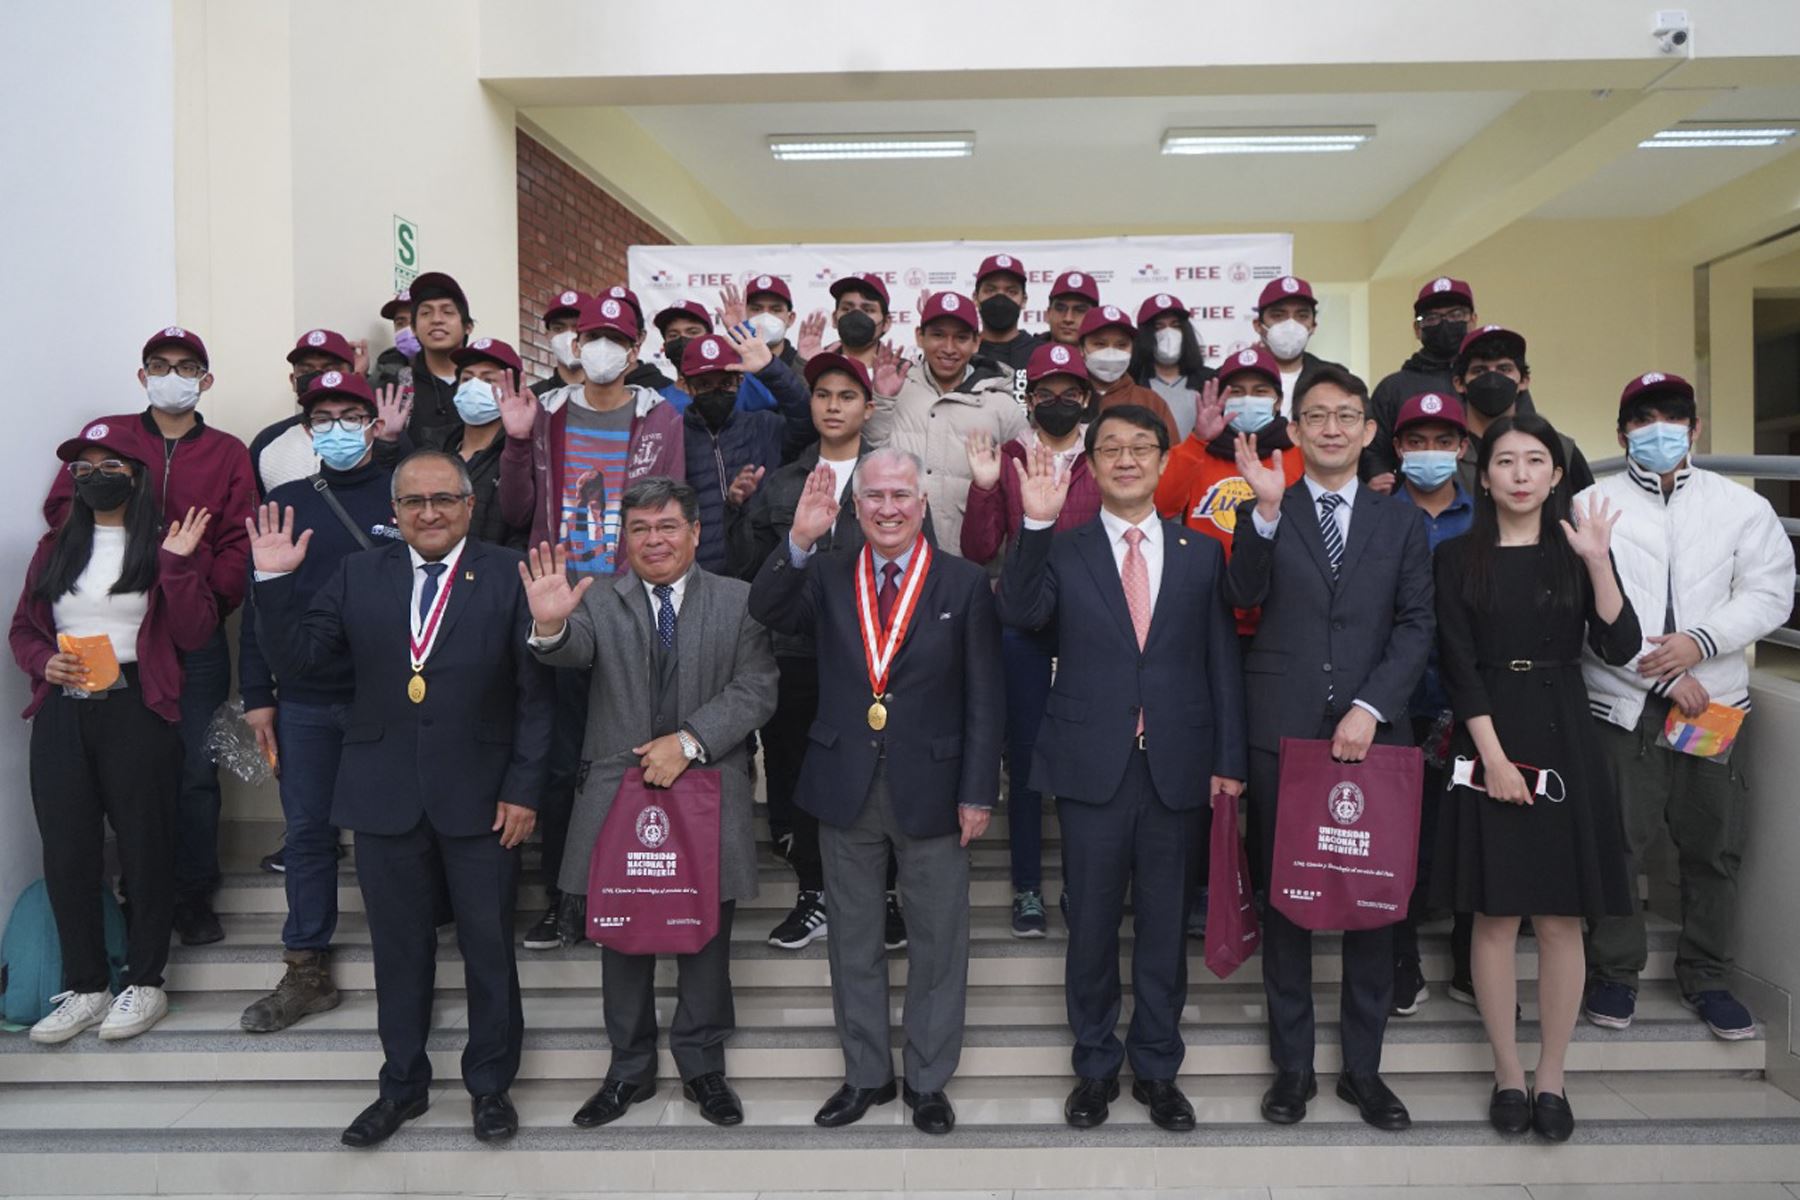 Ingresantes a la UNI participaron de una ceremonia junto a autoridades de la universidad, entre ellos el Dr. López-Chau Nava, Víctor Álvarez Herrera, Taeho Jung, Sunghwan Kim y Luis Miguel Romero.